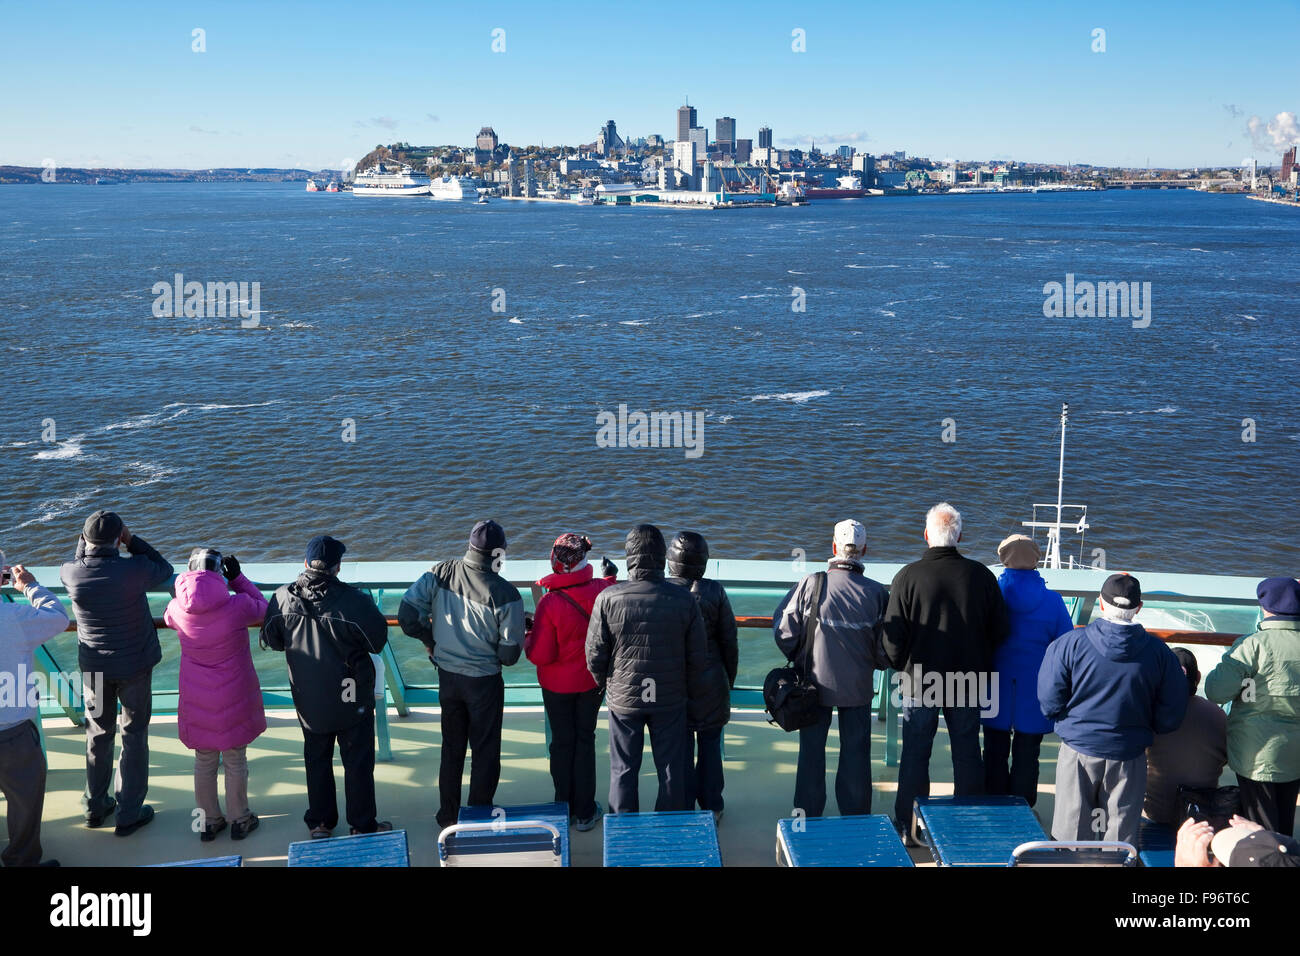 Passagiere auf dem oberen Deck eines Kreuzfahrtschiffes Schiff zusehen, wie ihr Schiff seinen Weg in Richtung Quebec Stadt in der Ferne macht Stockfoto